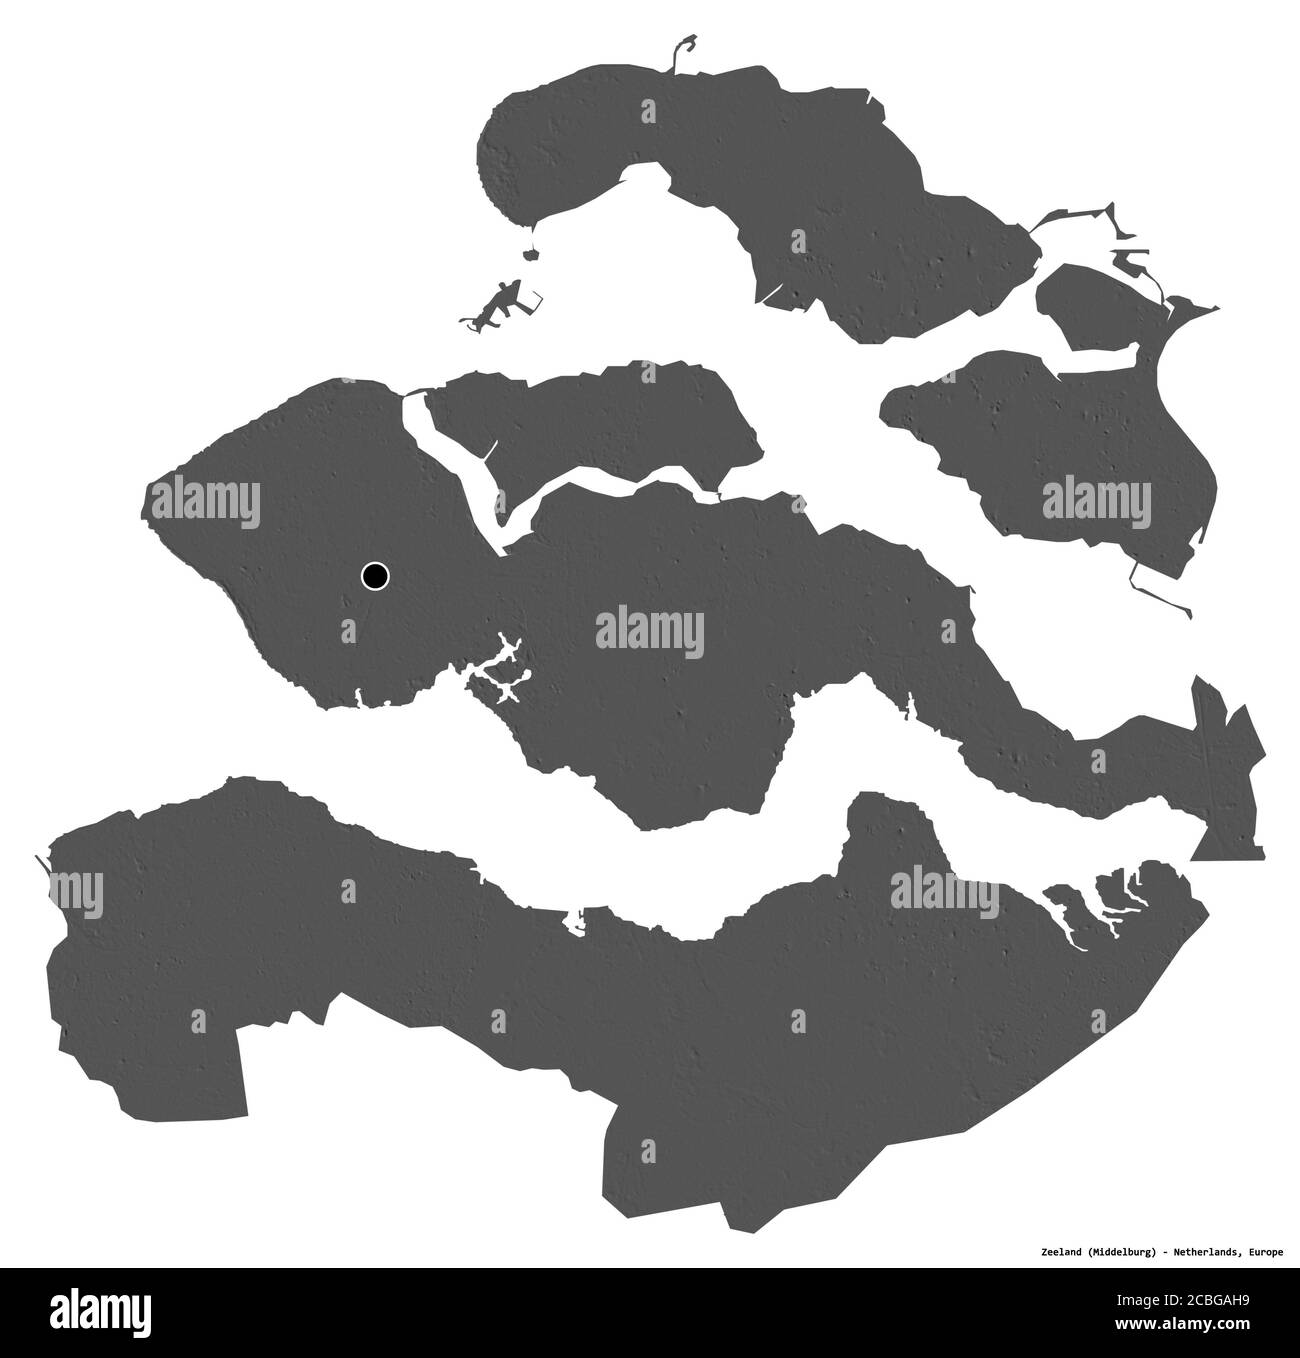 Forme de Zélande, province des pays-Bas, avec sa capitale isolée sur fond blanc. Carte d'élévation à deux niveaux. Rendu 3D Banque D'Images